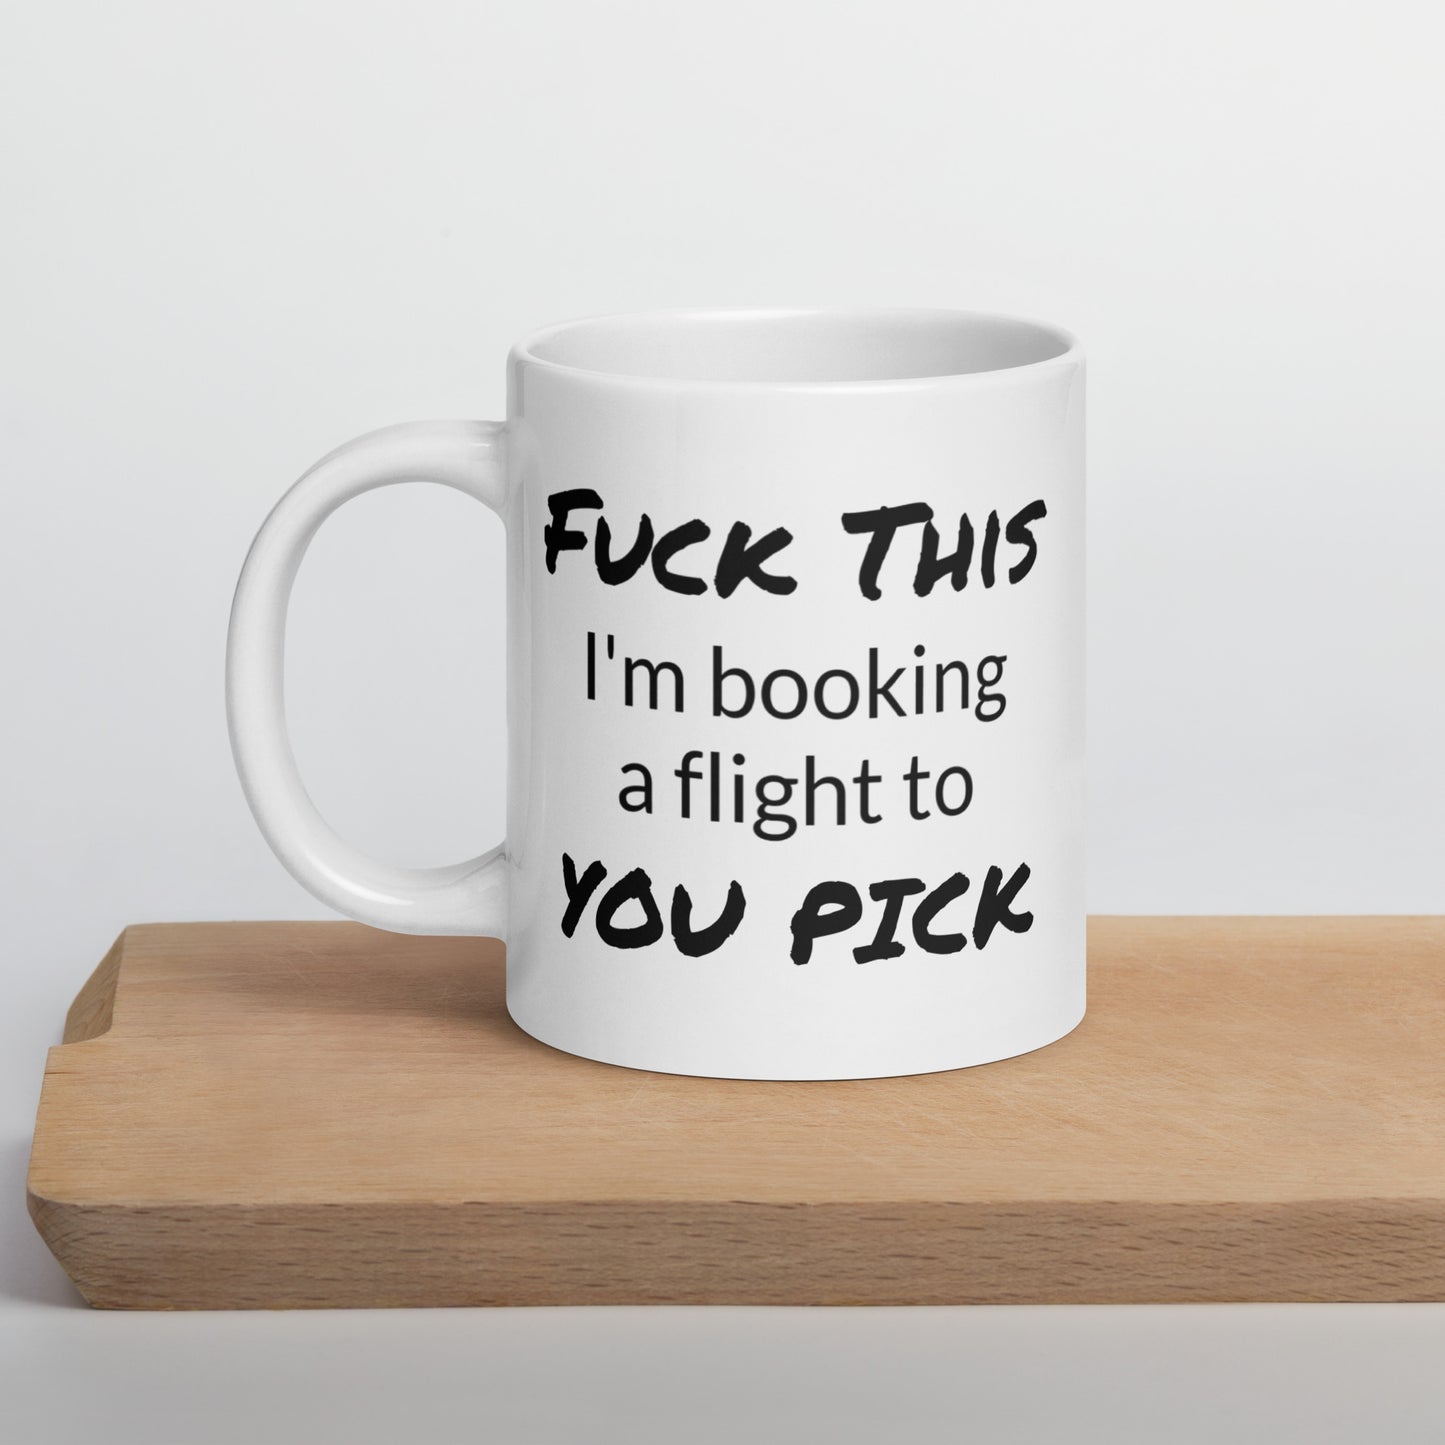 Custom Travel Lover Coffee Mug, Travel Lover Mug, Fuck This, Book a Flight, Travel Lover Mug, Traveler Gift, Travel Lover Gifts